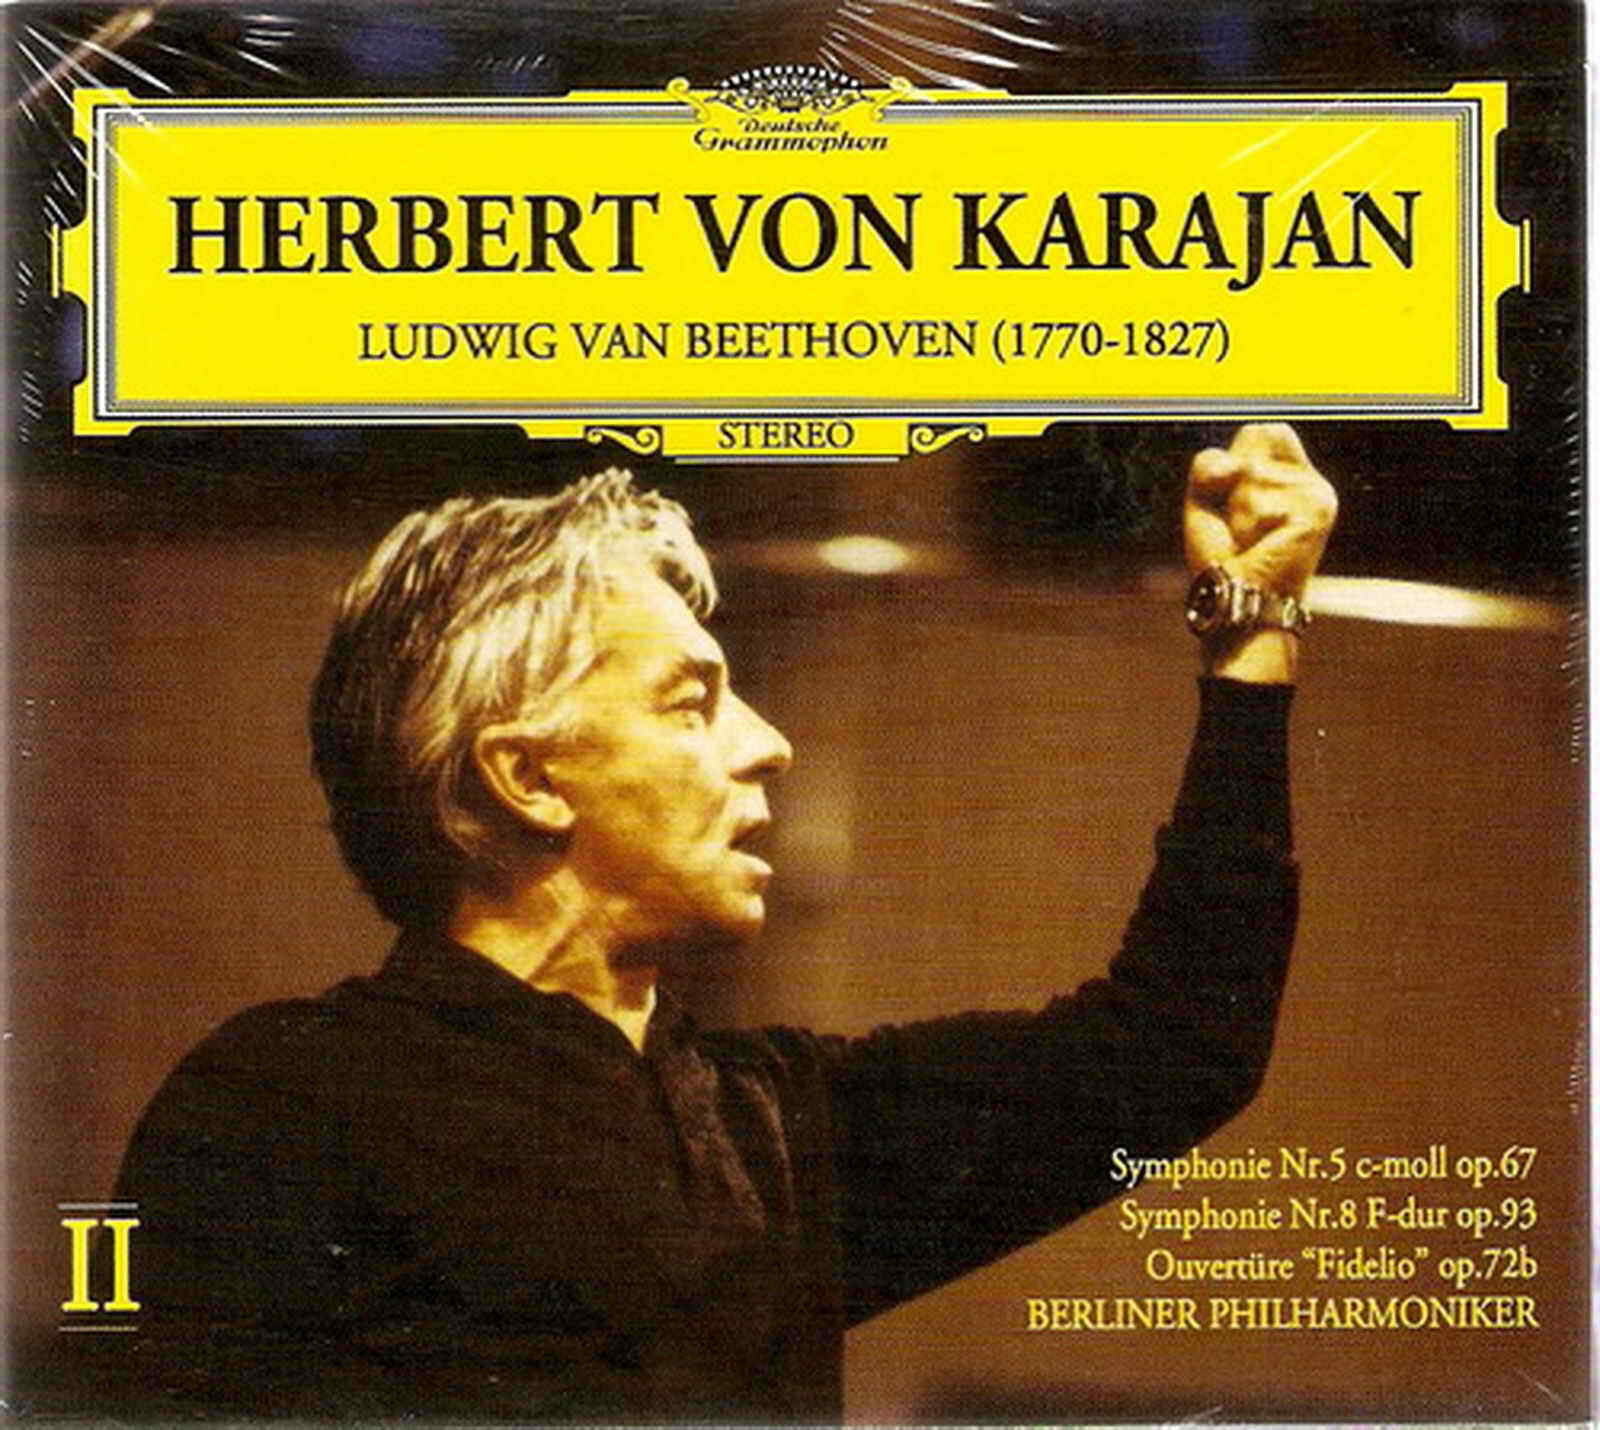 Primary image for LUDWIG VAN BEETHOVEN 9 tracks rare HERBERT VON KARAJAN CD